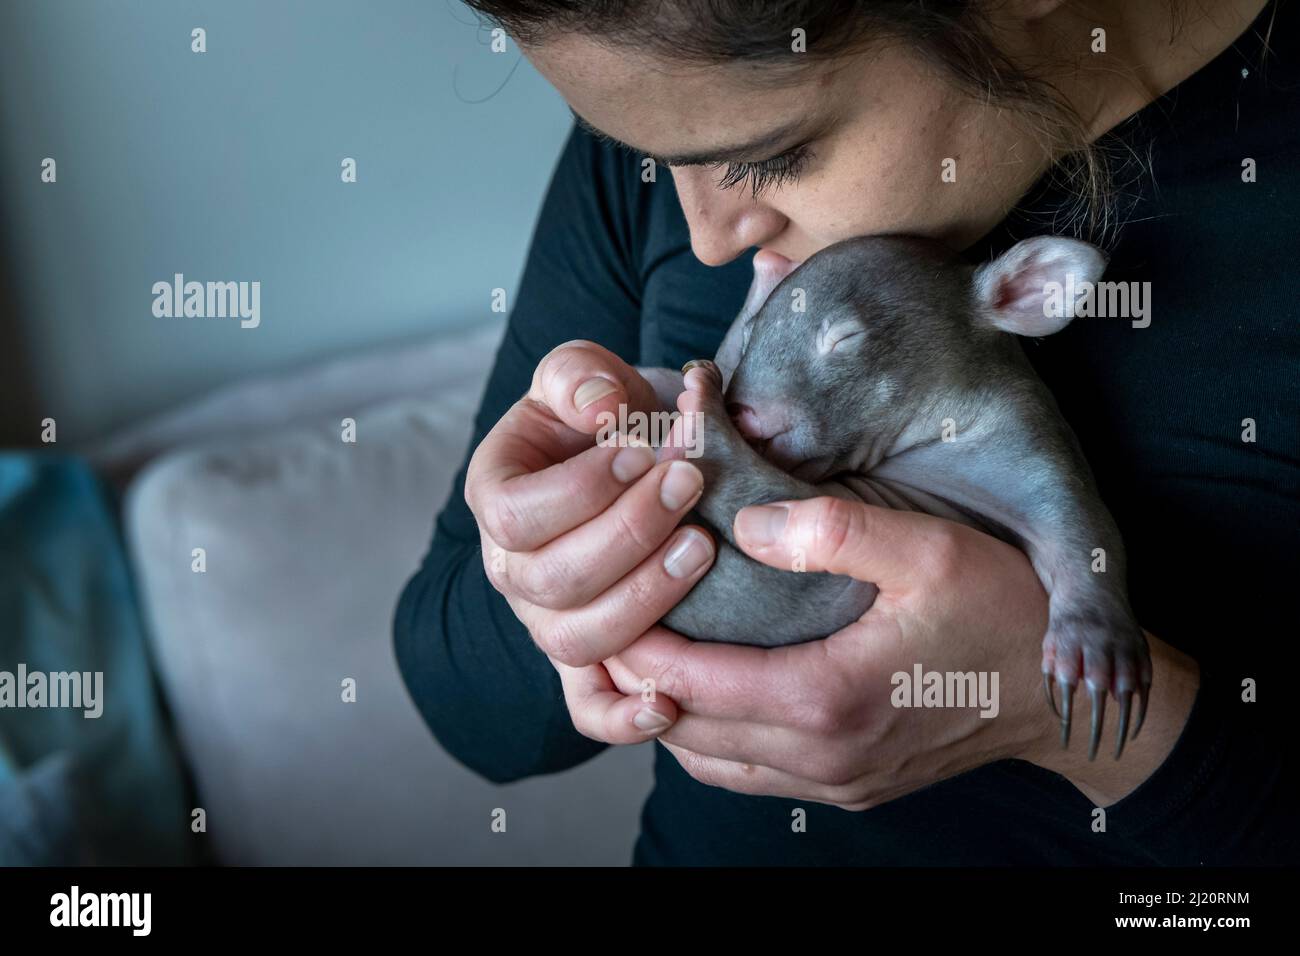 Emily piccolo, fondatore di Goongerah Wombat Orphanage, tenendo nudo-nosed wombat (Vombatus ursinus) bambino di sesso maschile salvato, età 6 mesi, chiamato 'Landon'. Scadenza Foto Stock